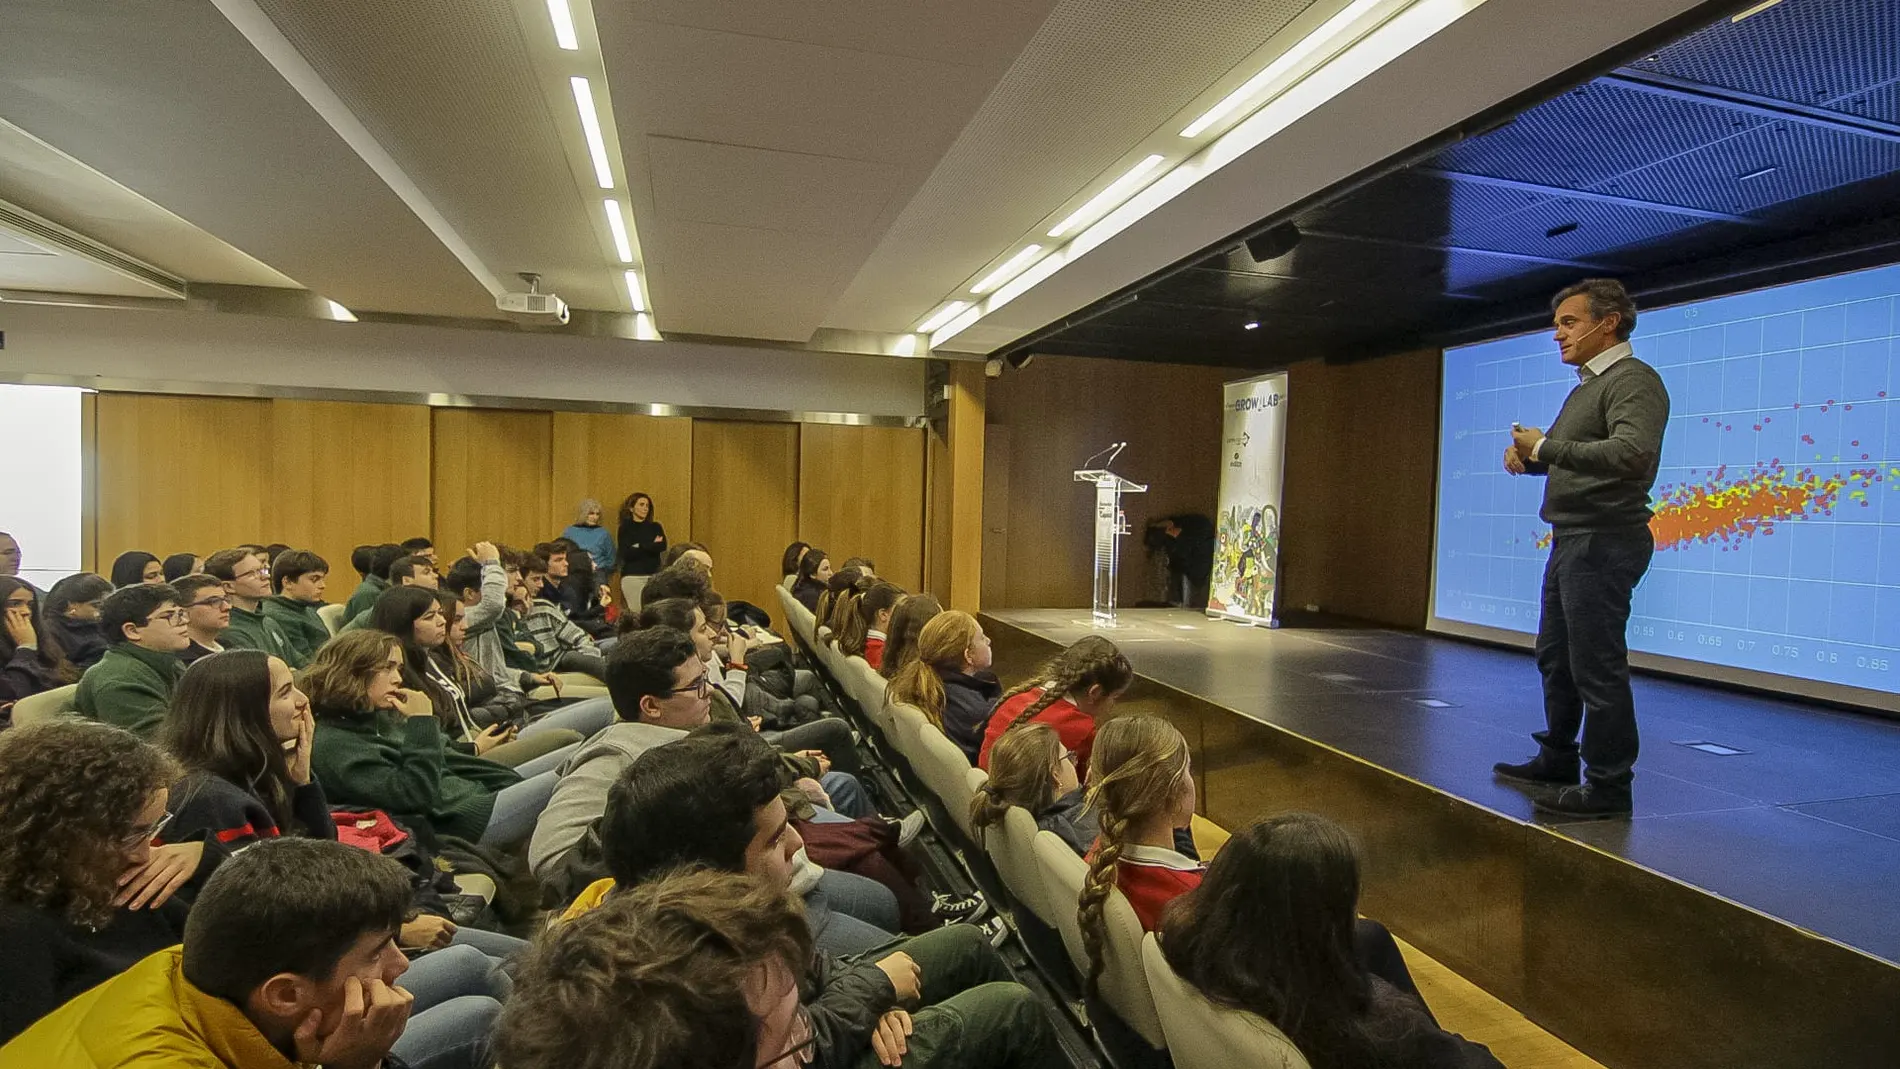 Sesión del programa de educación en emprendimiento "Im Growlaber" organizado por Cesur y ec2ce en Sevilla